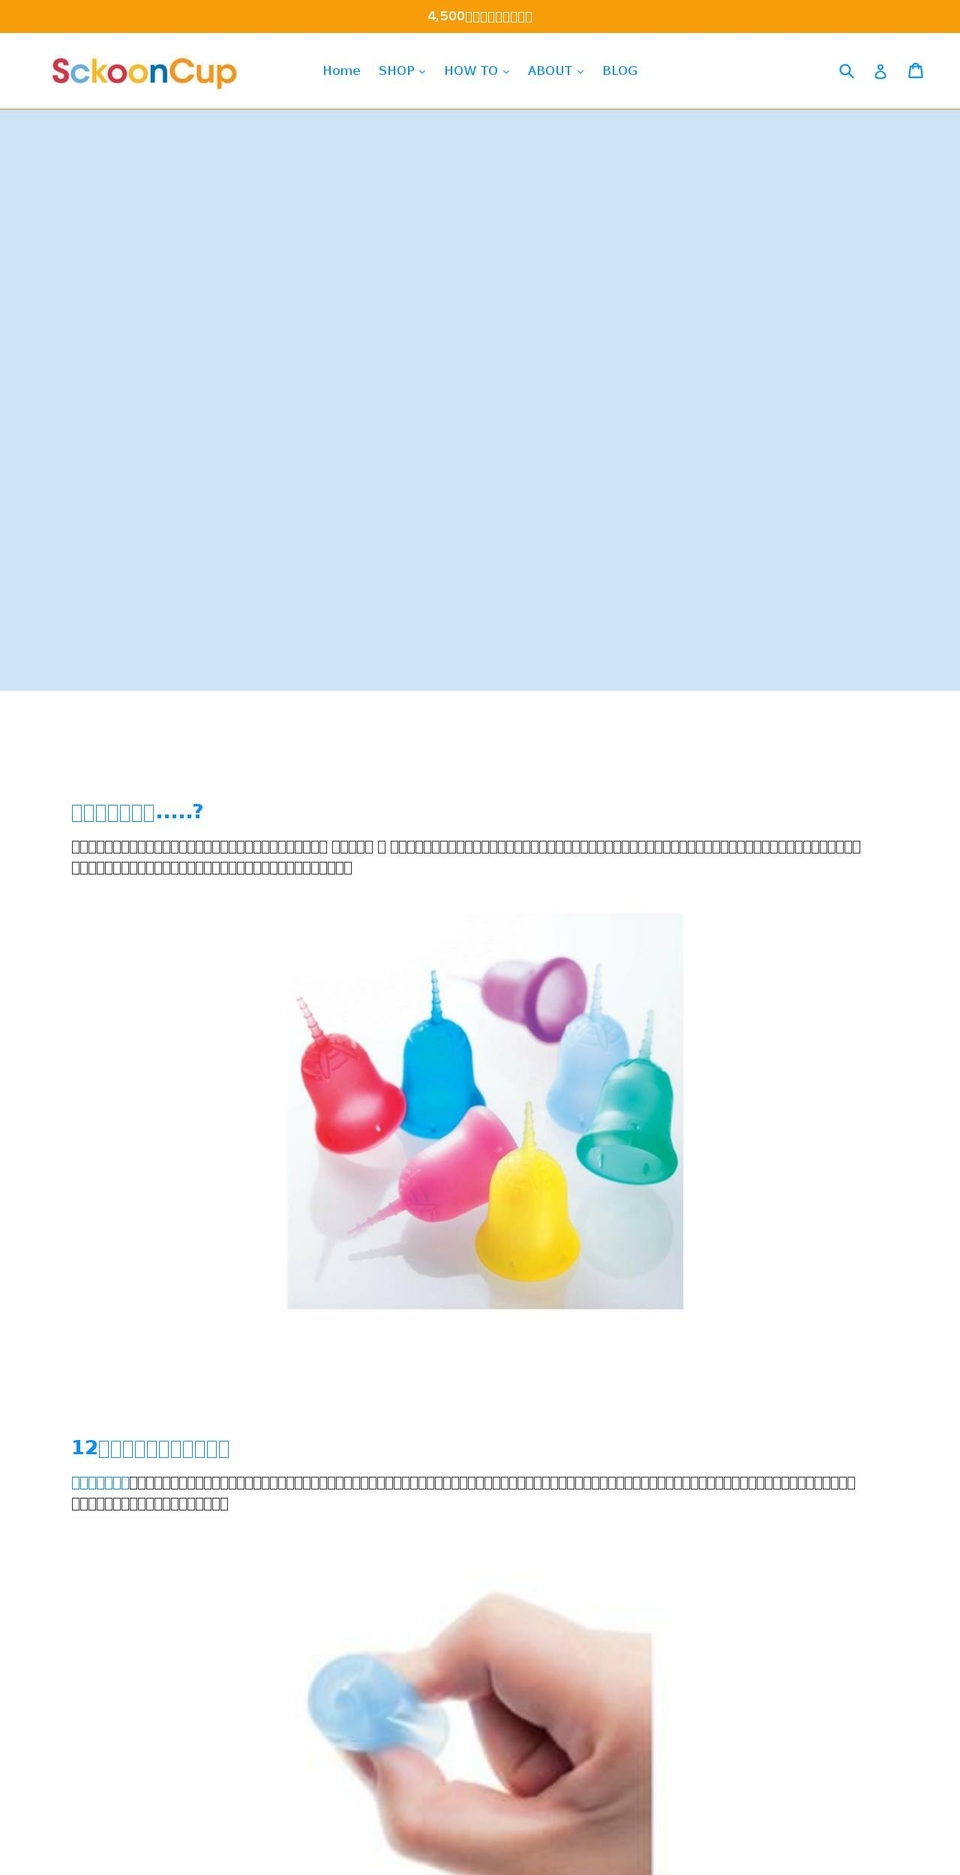 sckooncup.jp shopify website screenshot